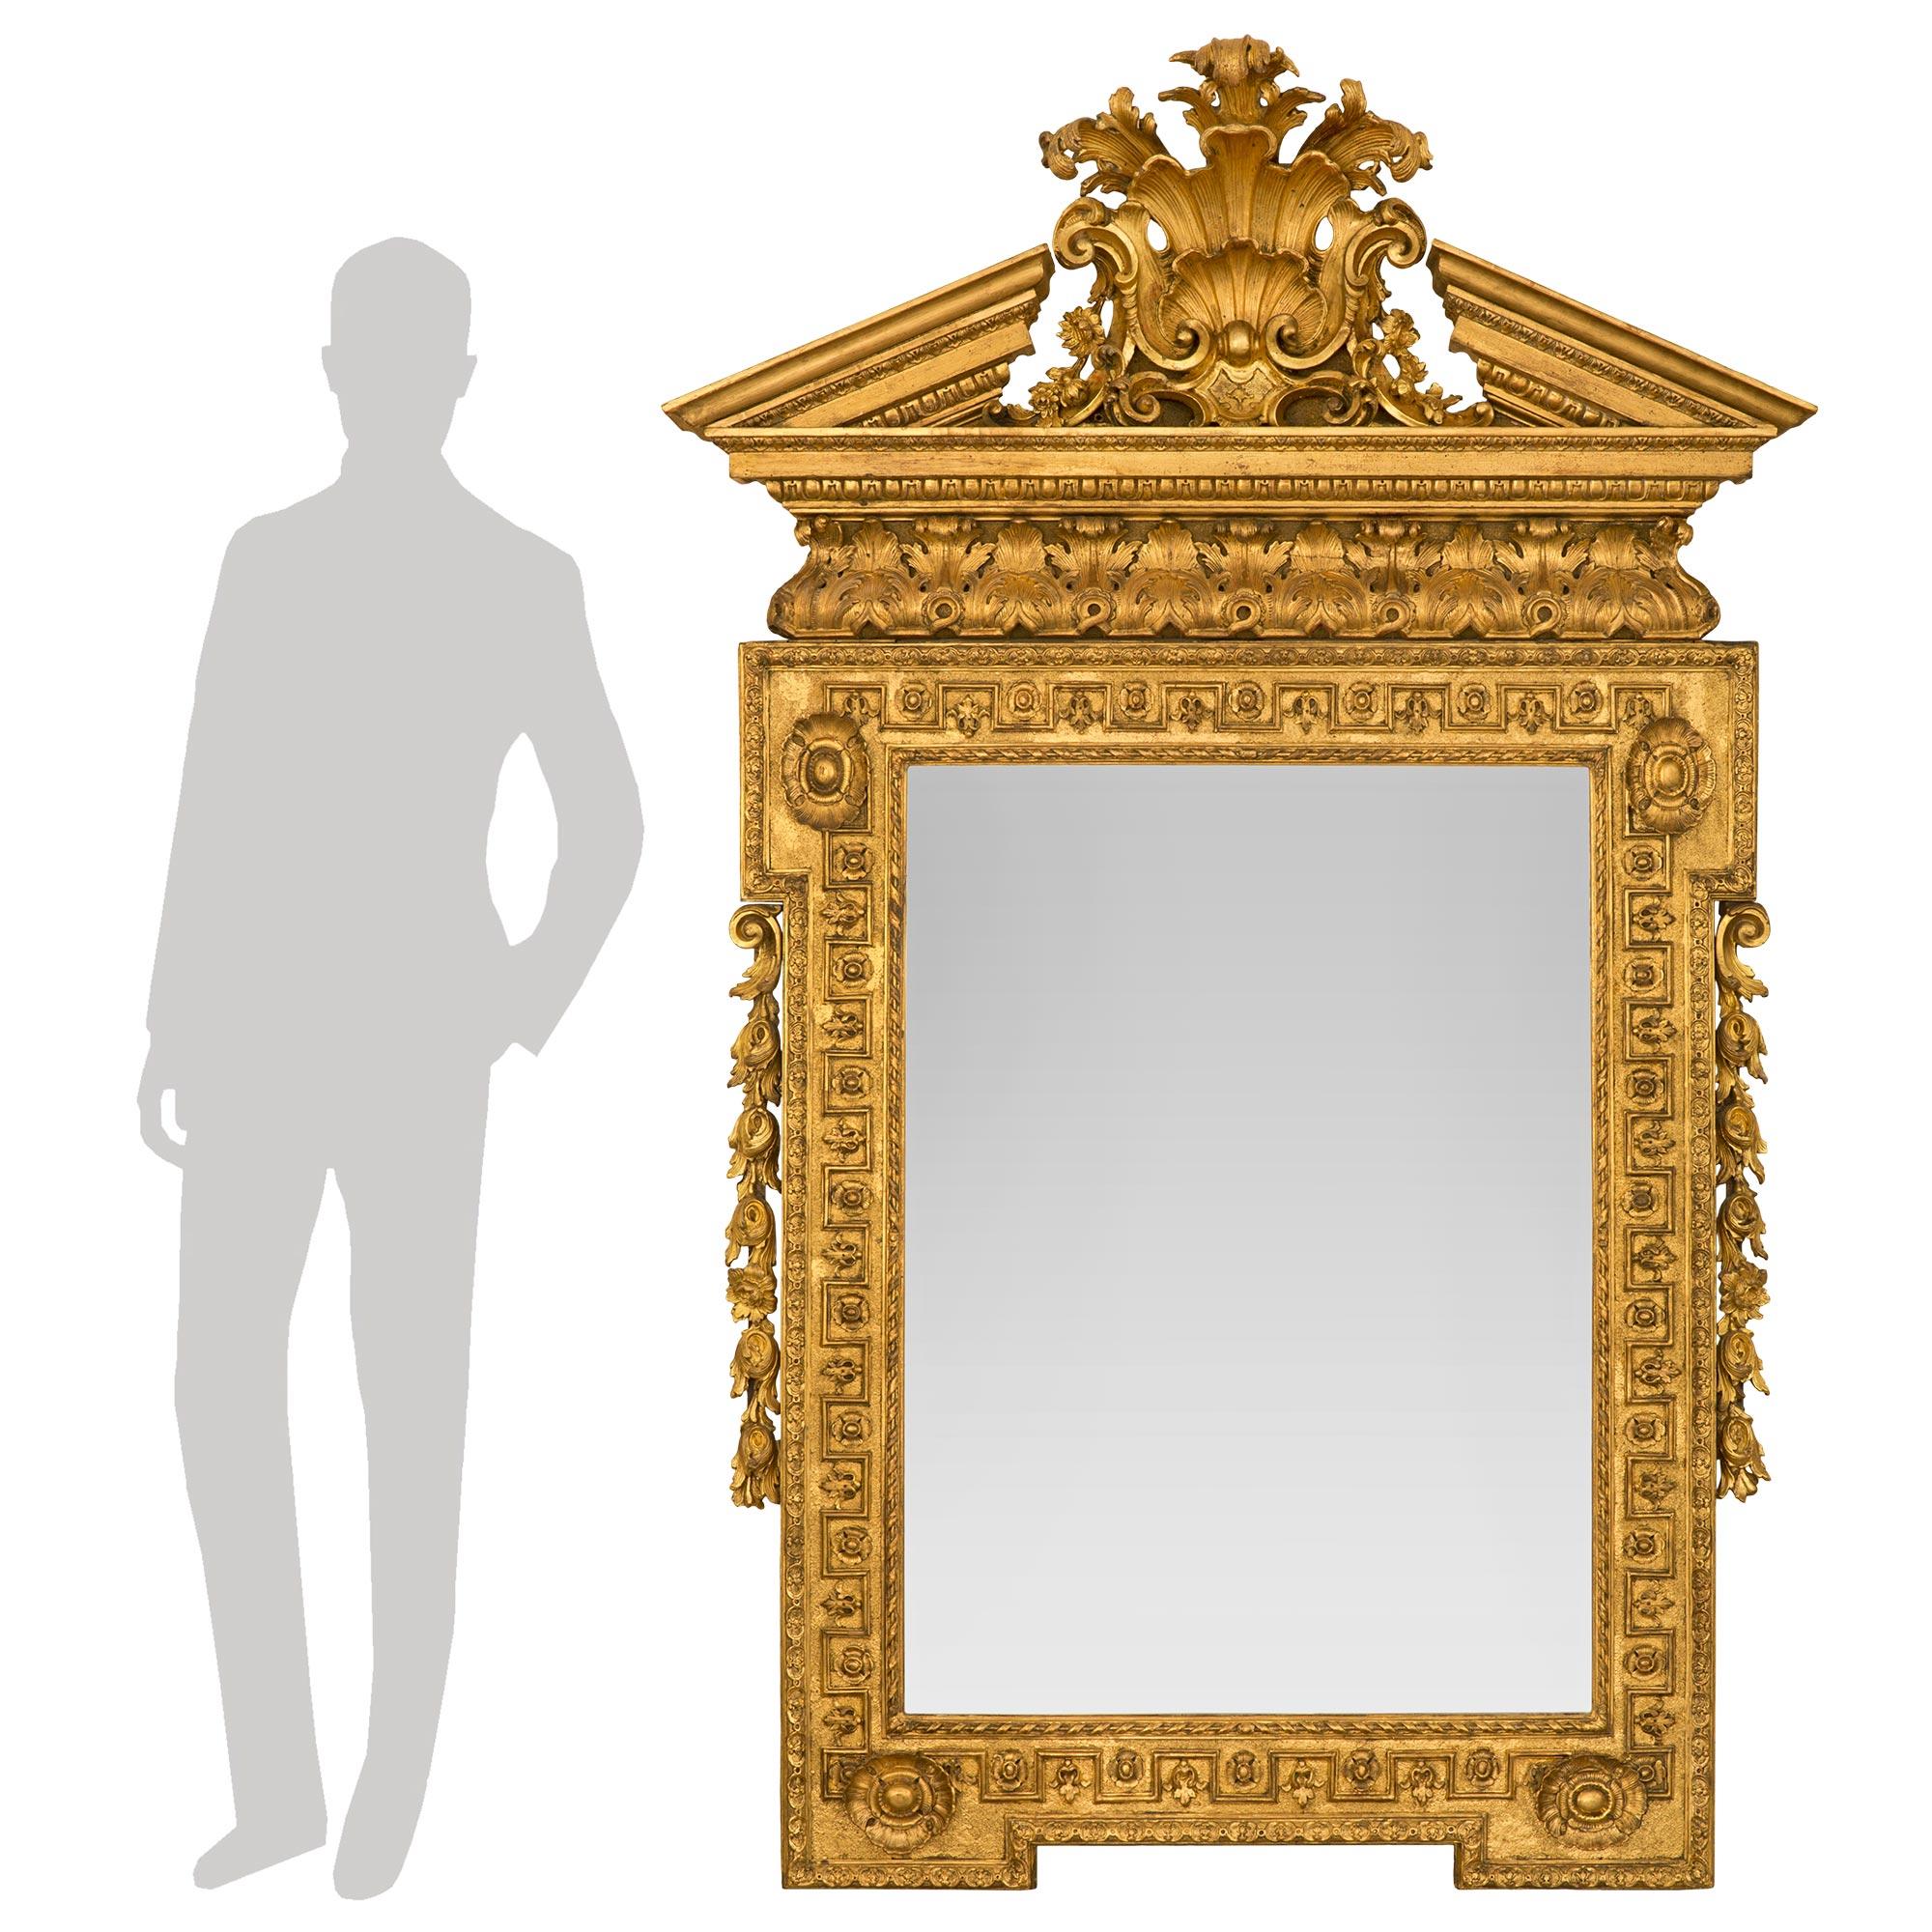 Ein sensationeller und großformatiger englischer Vergoldungsspiegel aus dem frühen 19. Jahrhundert (George I.) um 1820. Der Spiegel behält seine ursprüngliche Spiegelplatte in einem atemberaubenden und sehr dekorativen Rahmen mit einem feinen